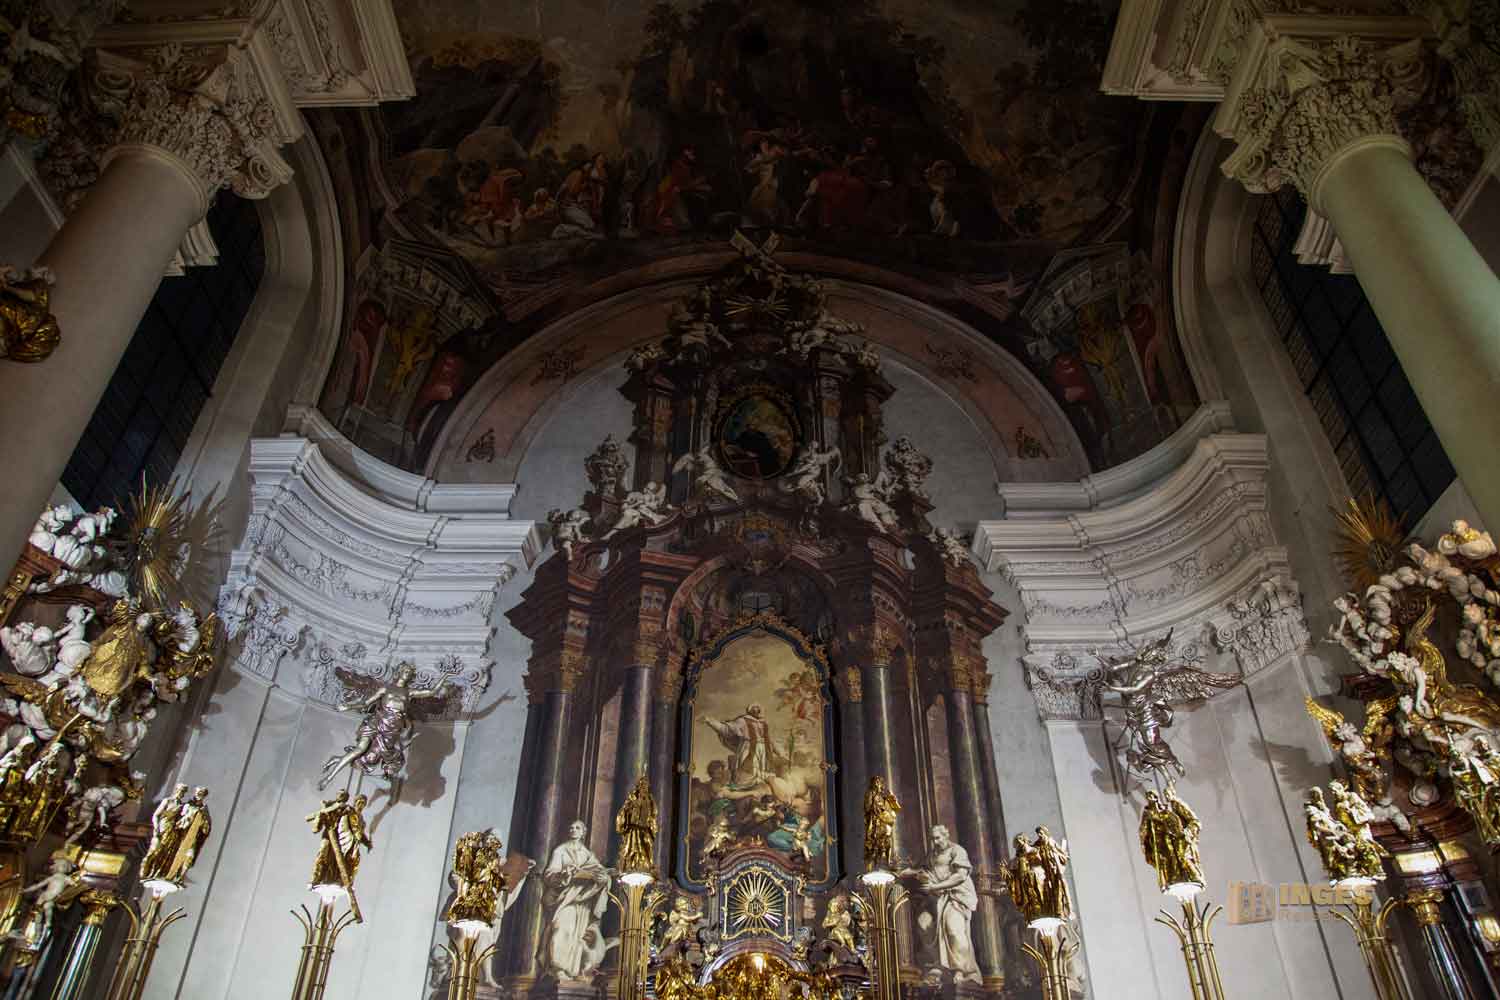 altar kathedrale st.clemens altstadt prag 0225